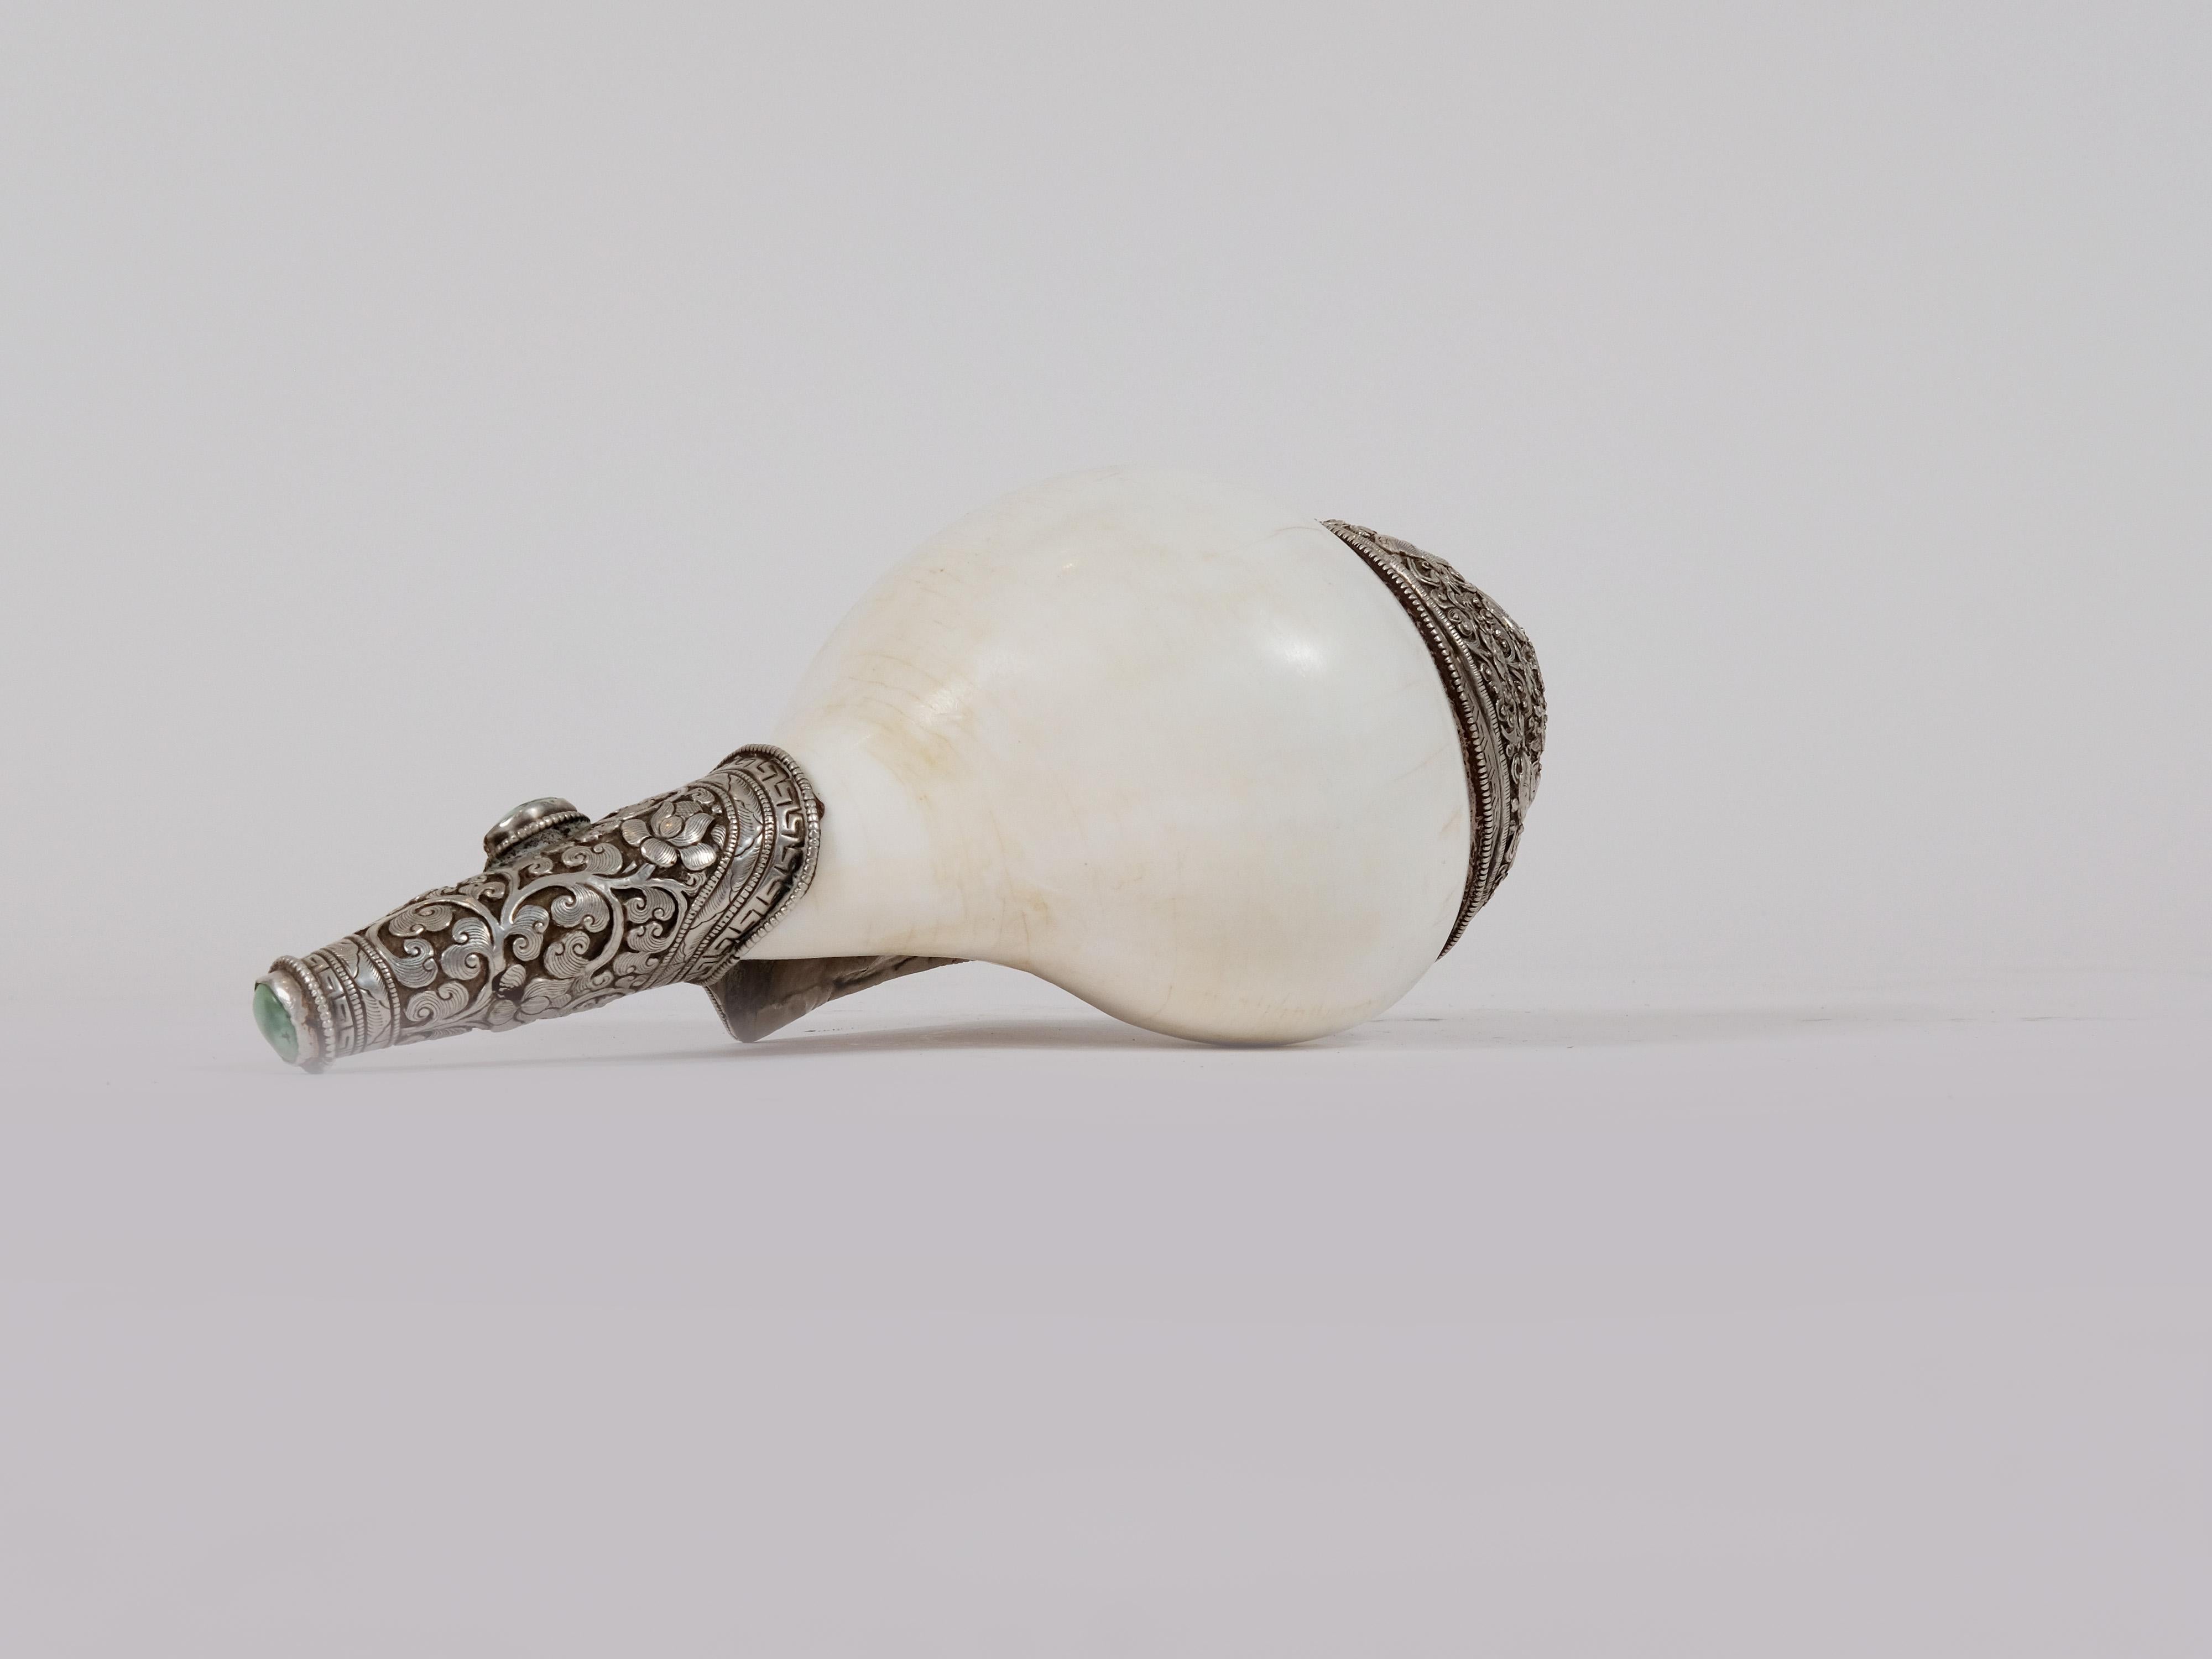 Tibetan Ceremonial Silver Studded Conch with Semi-Precious Stones In Good Condition For Sale In Miami, FL